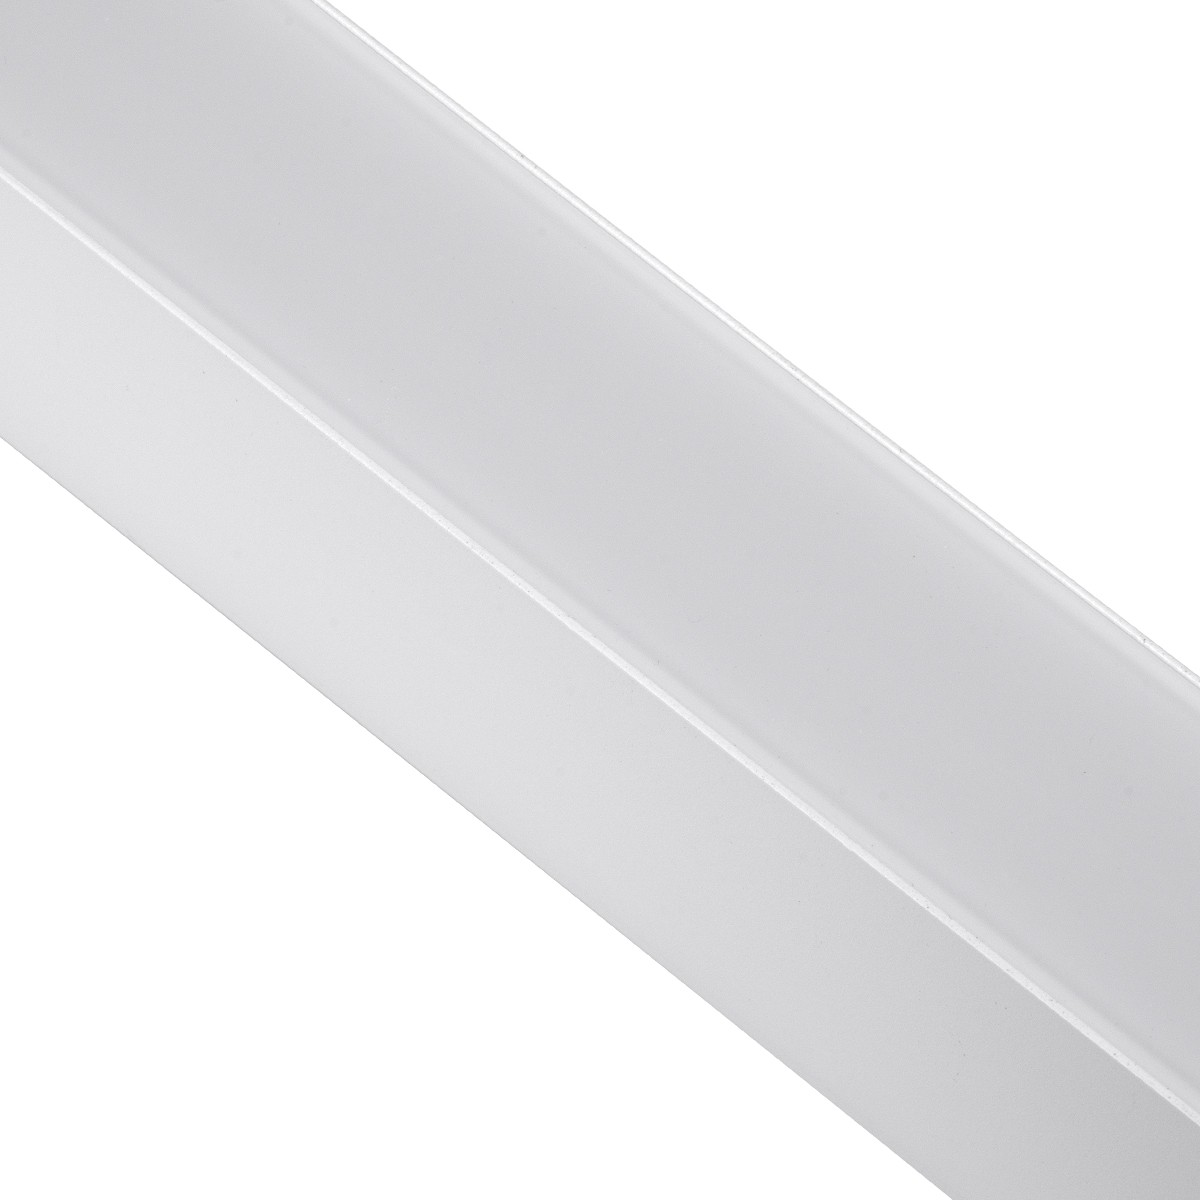 Led Γραμμικό Φωτιστικό Οροφής FELIX 54Watt Λευκό με Εναλλαγή Φωτισμού Μ120 x Π3.5 x Υ7cm 61029-S